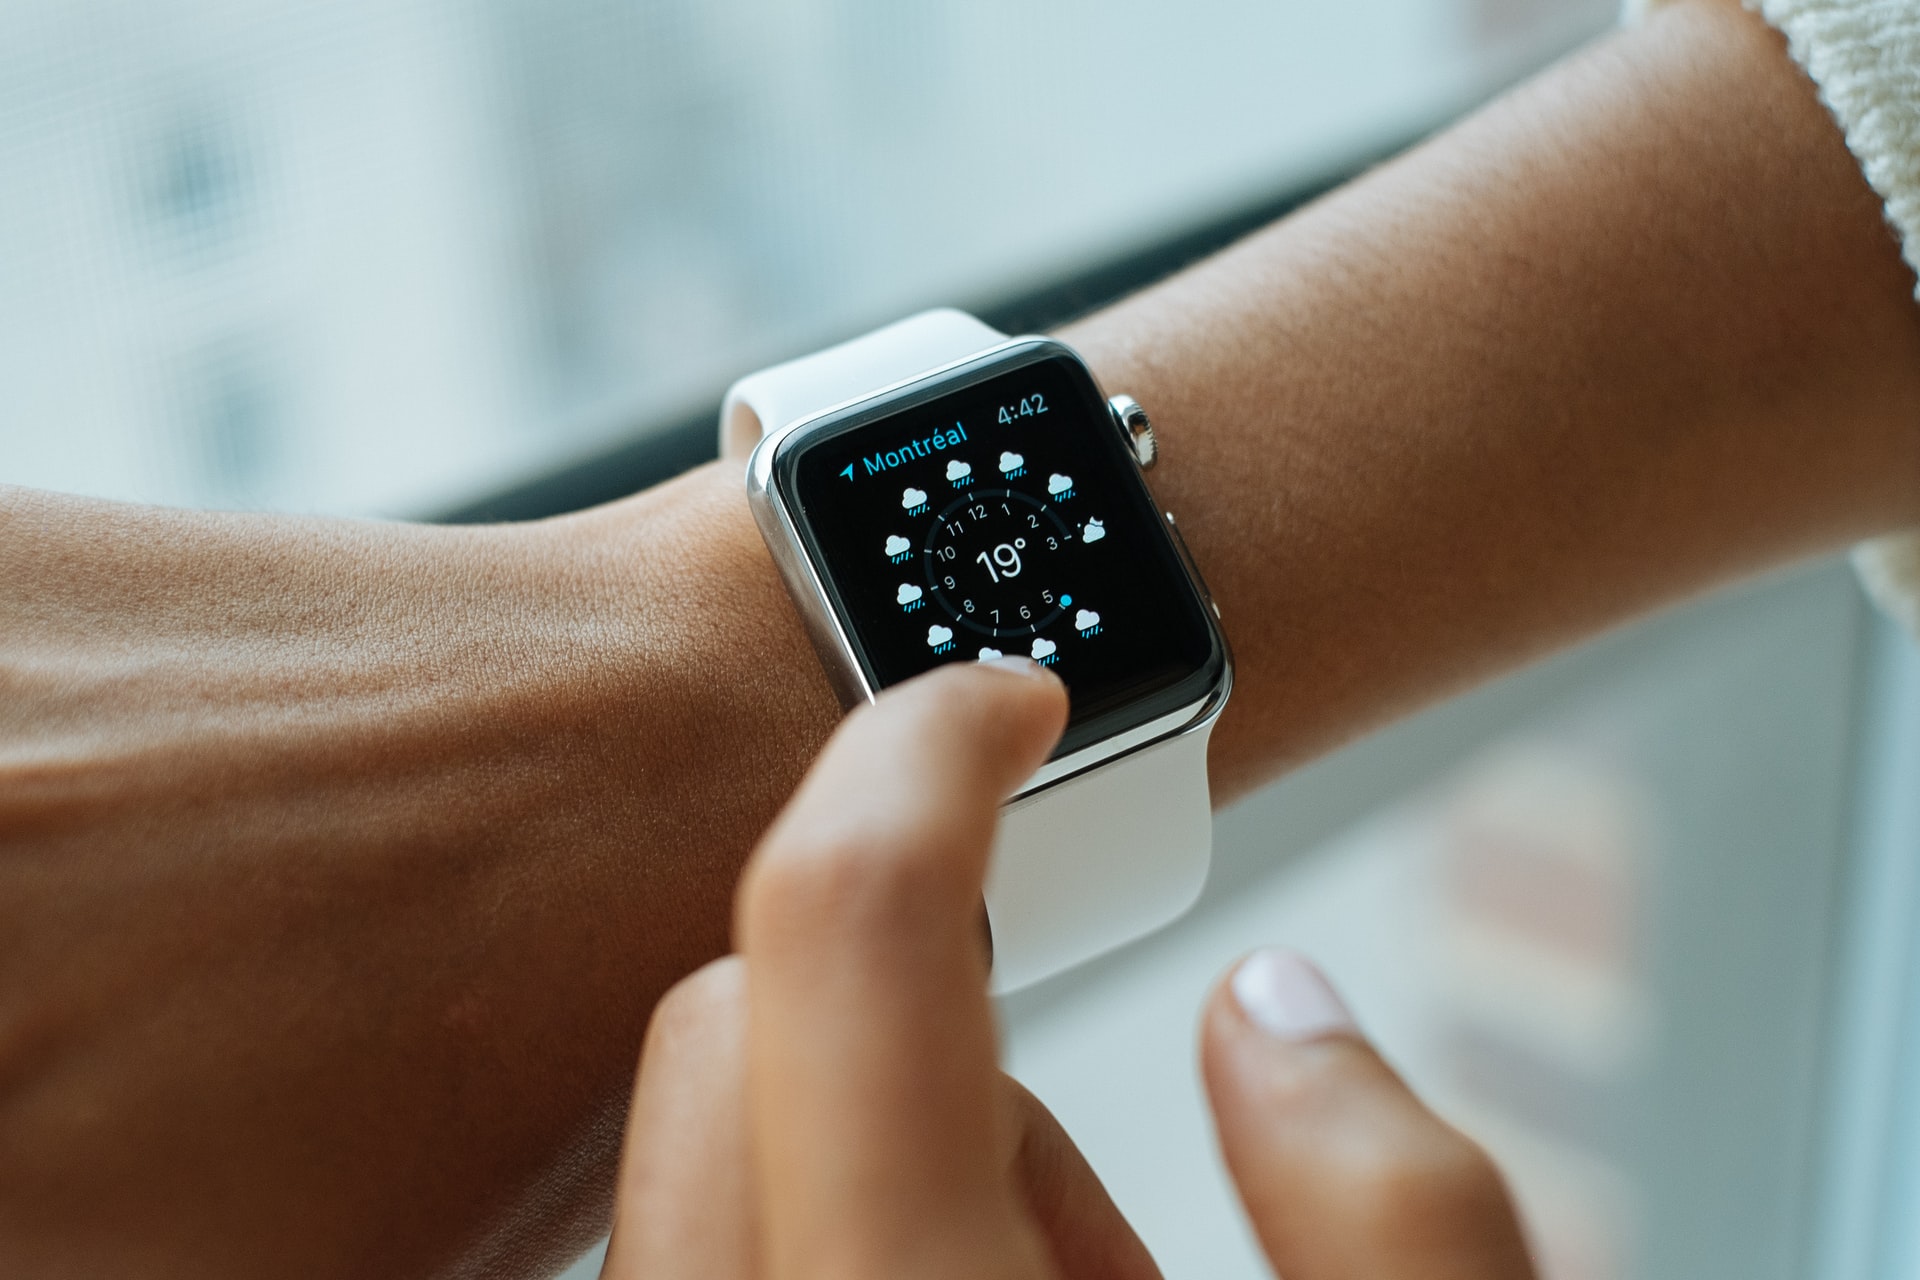 Los smartwatch ayudan a controlar el ciclo del sueño, el ritmo cardiaco y, los modelos más recientes, la saturación de oxígeno. (Foto Prensa Libre: Luke Chesser on Unsplash).